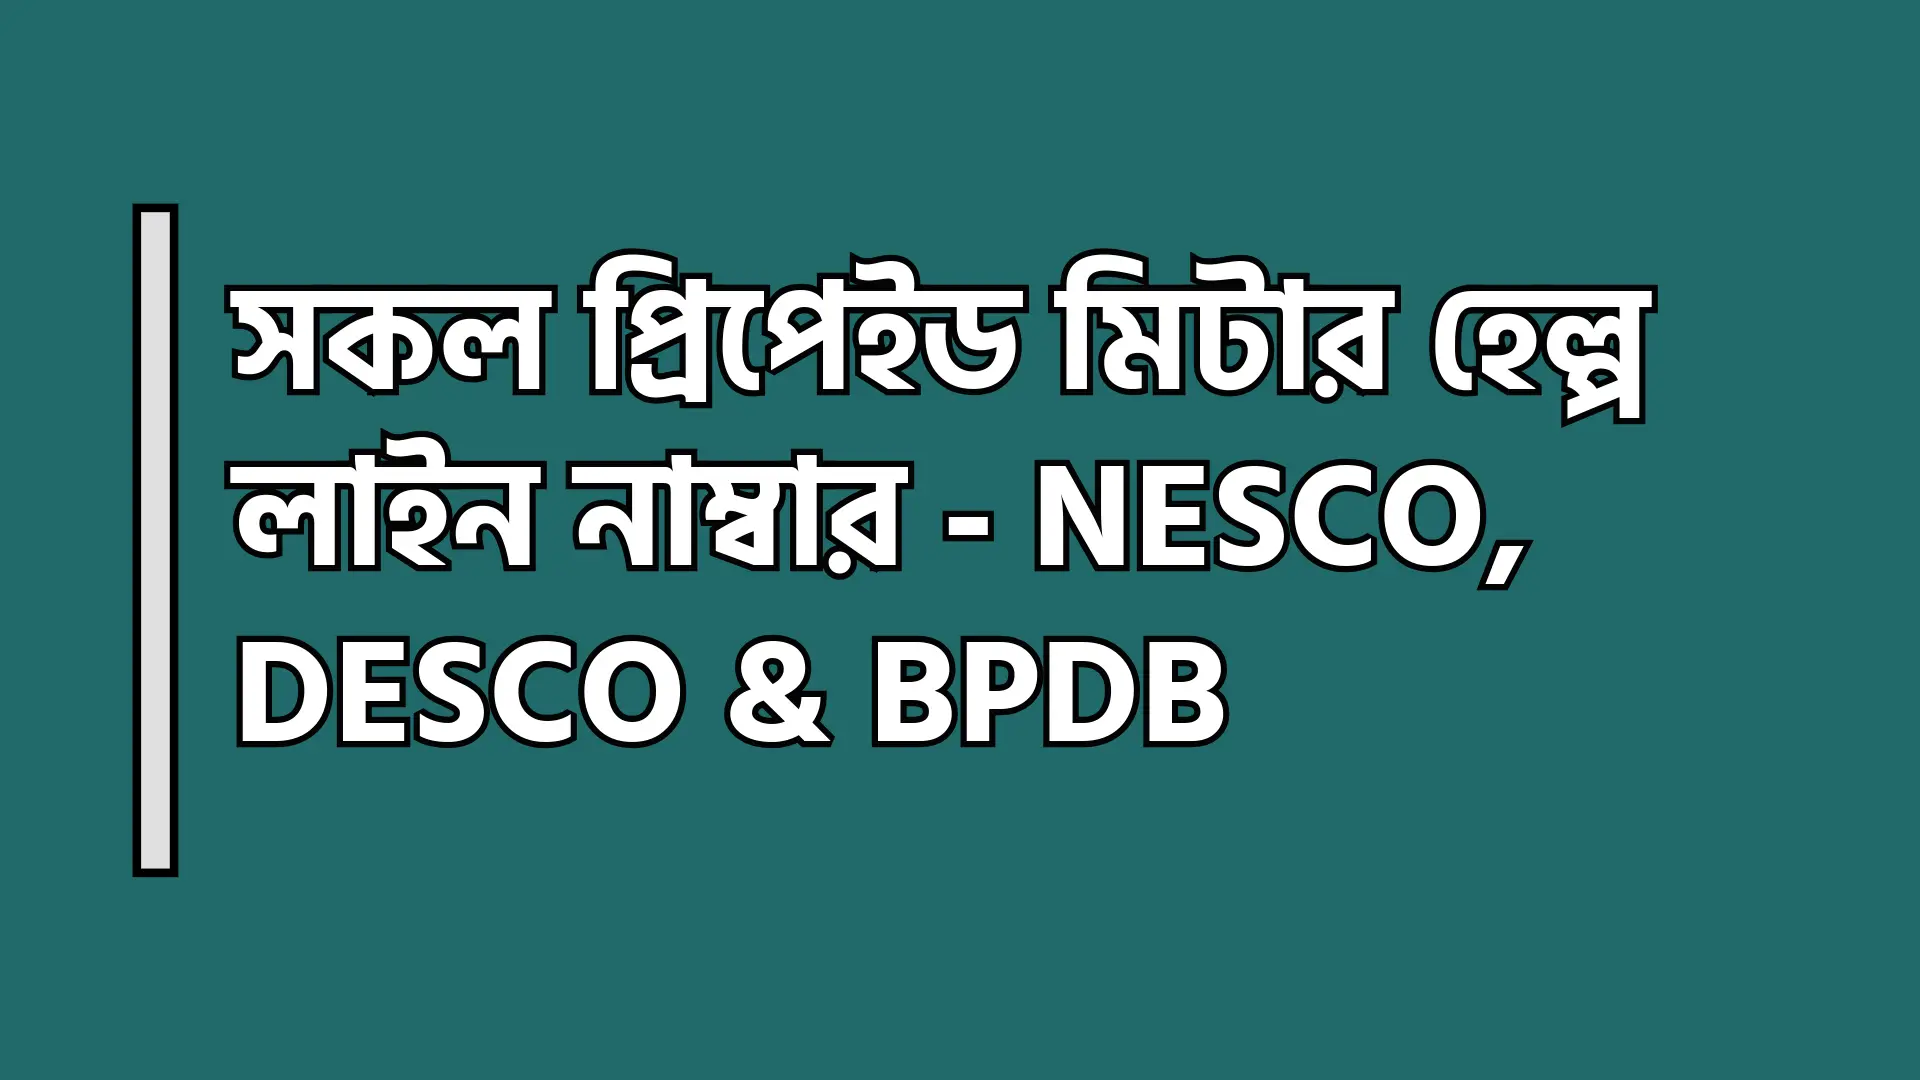 সকল প্রিপেইড মিটার হেল্প লাইন নাম্বার - NESCO, DESCO & BPDB